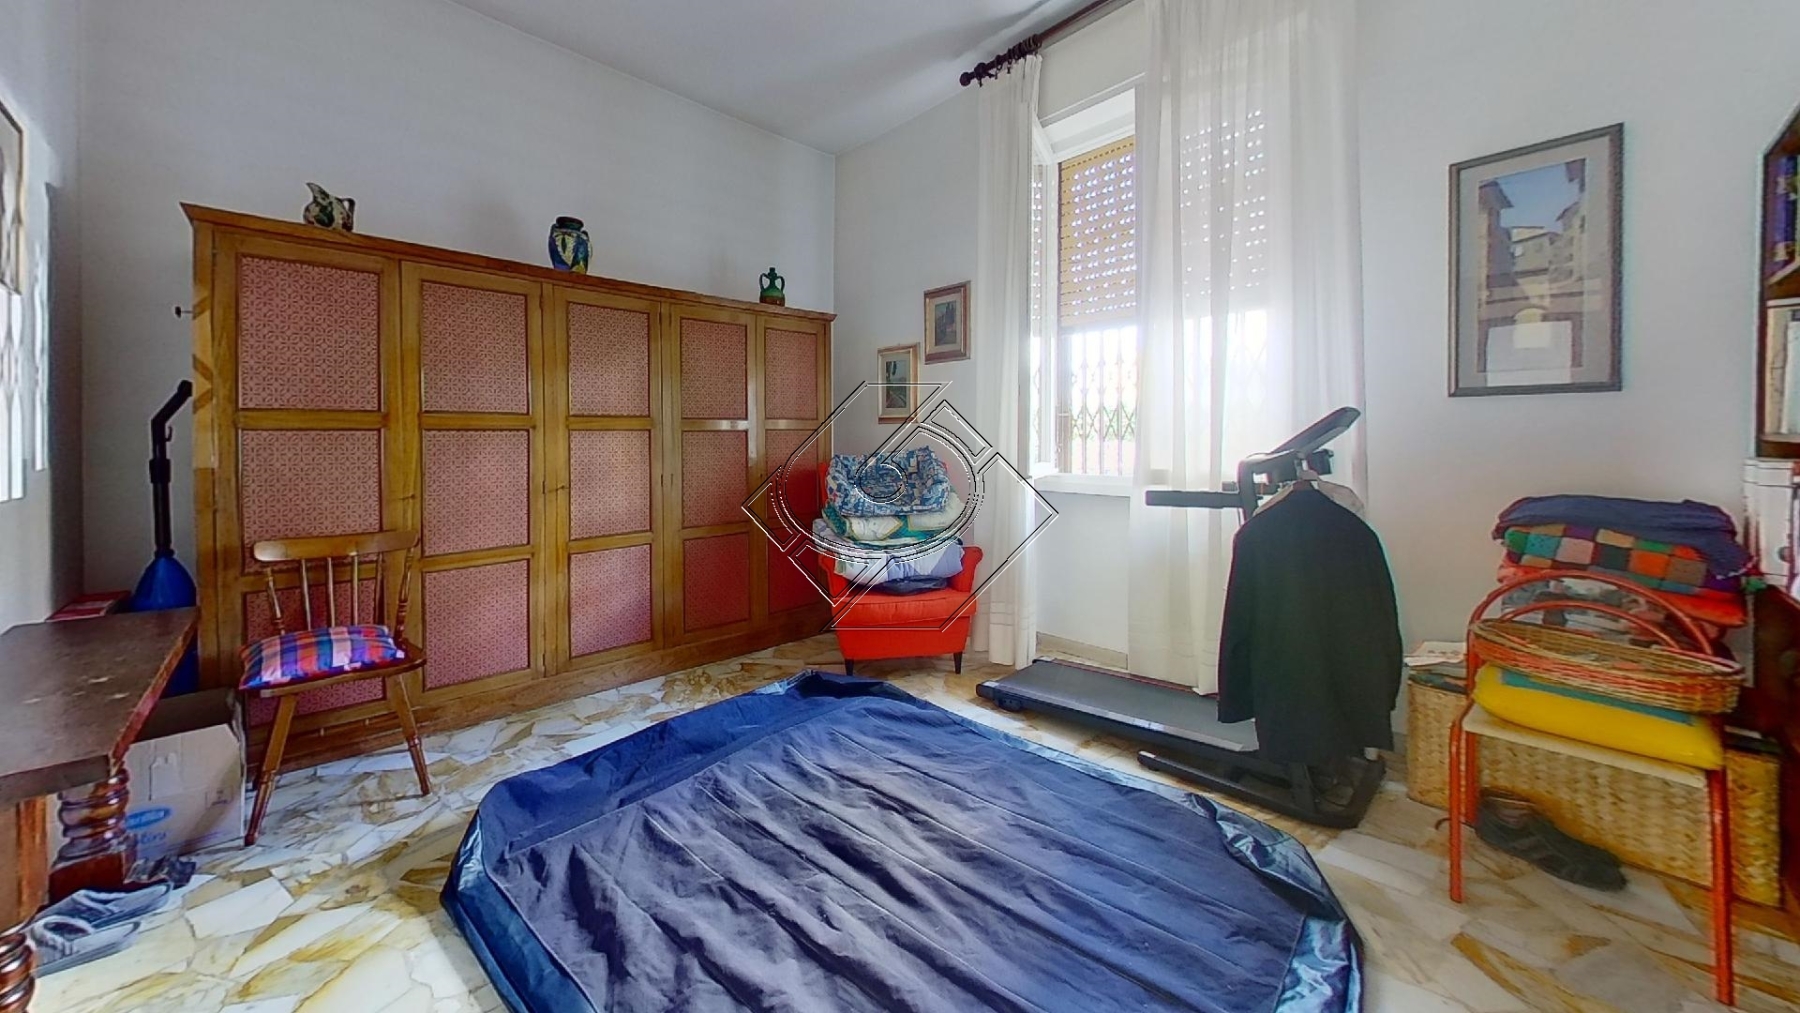 Via-Vittorio-Emanuele-Orlando-Bedroom